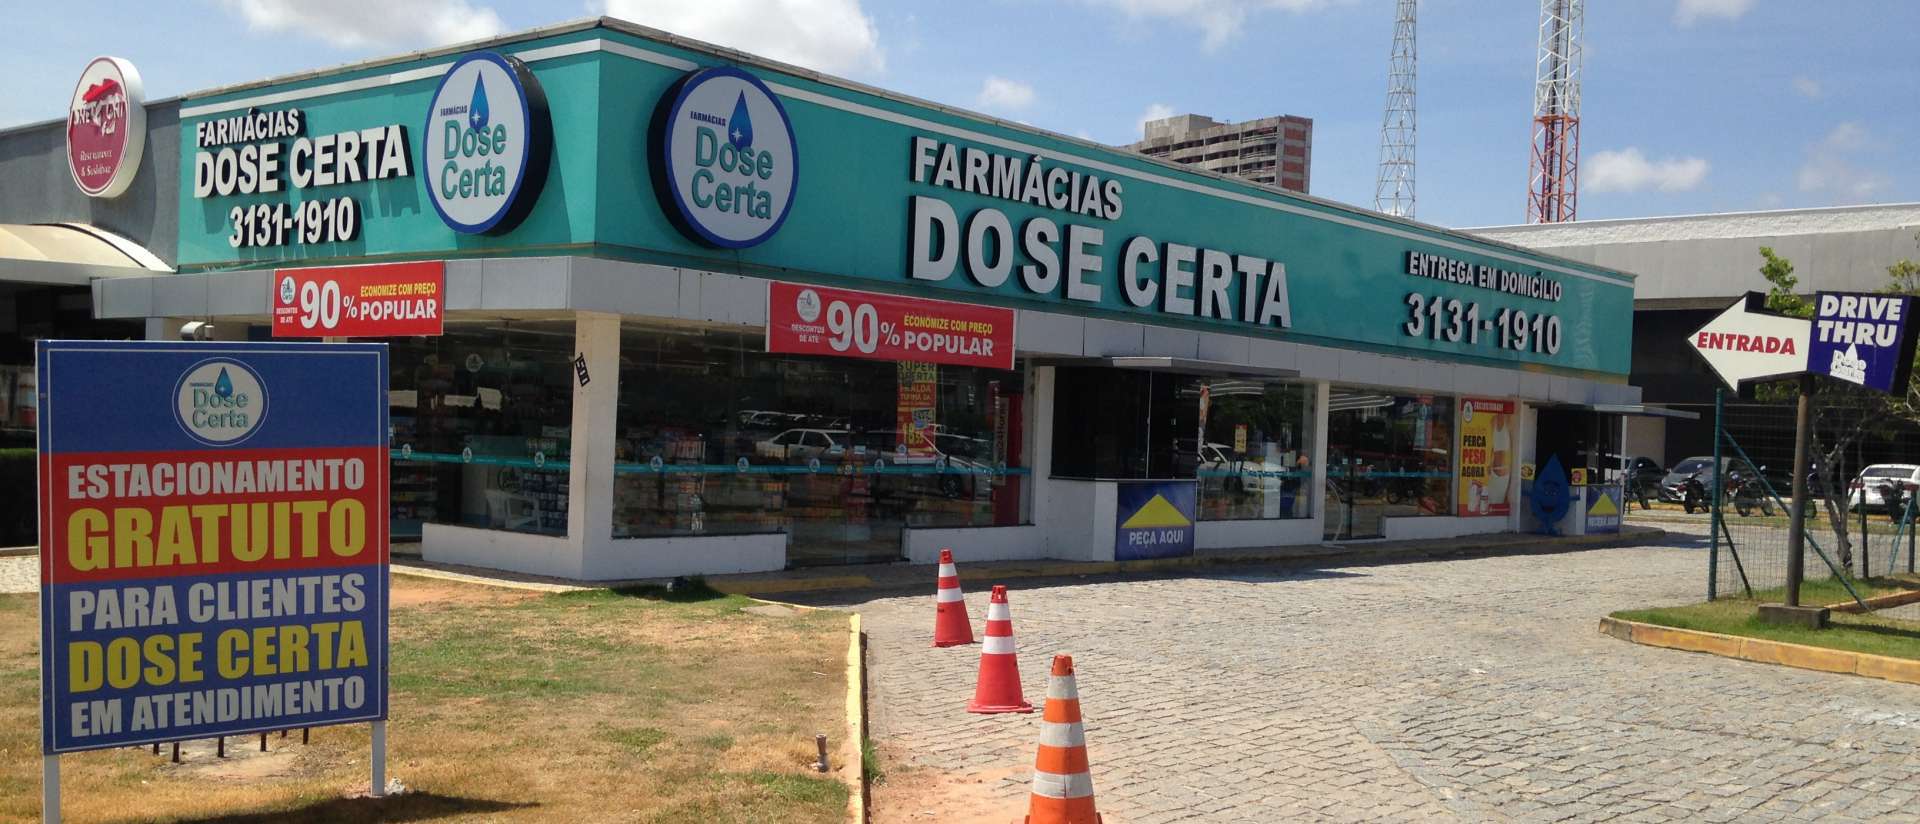 ￼REDE de farmácias Dose Certa tem lojas em Fortaleza e Região Metropolitana